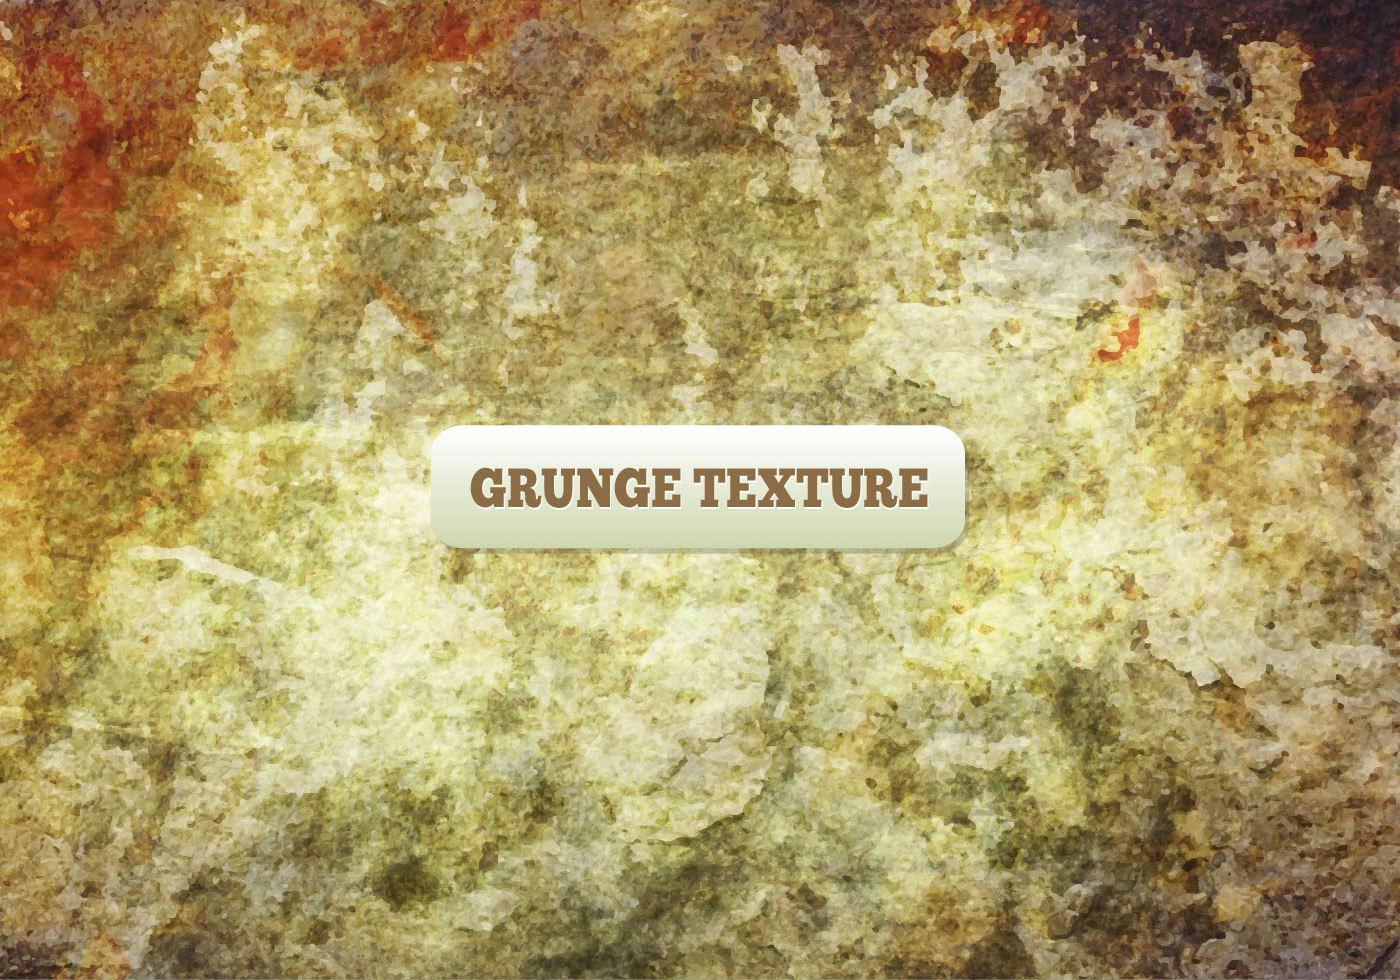 Download Free Vector Grunge Texture 123570 Vector Art at Vecteezy